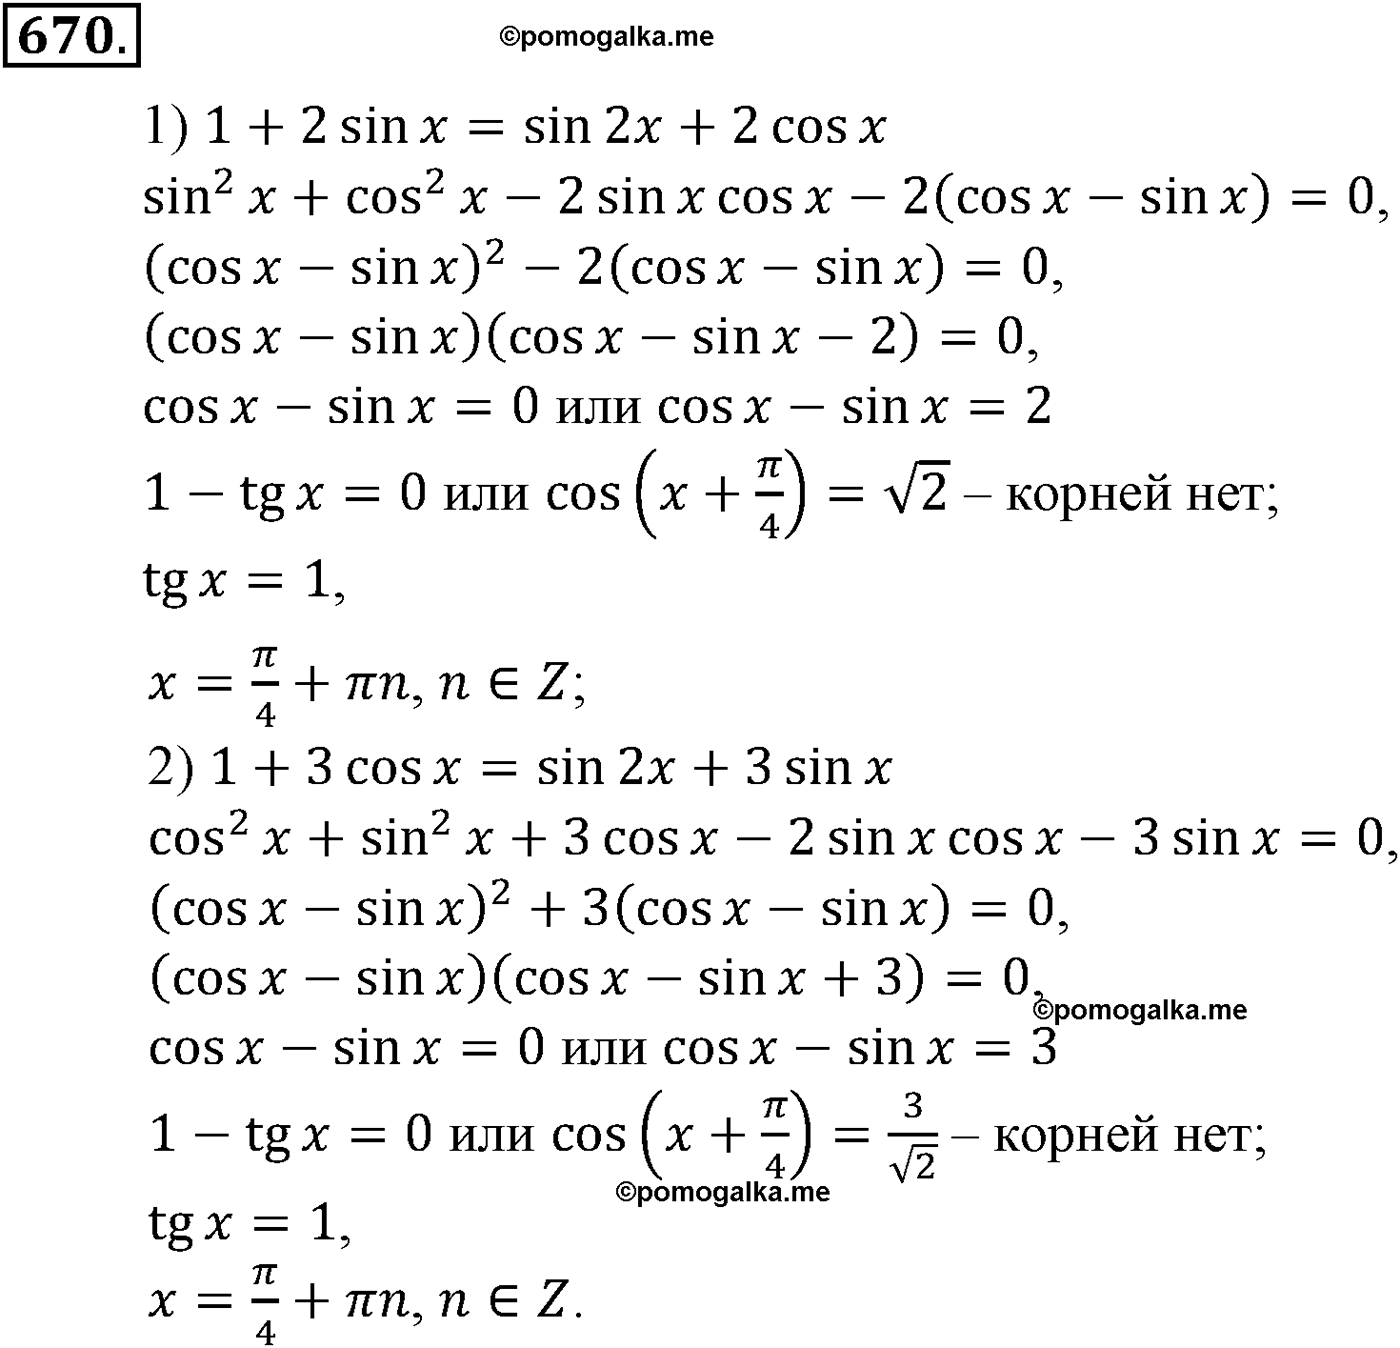 разбор задачи №670 по алгебре за 10-11 класс из учебника Алимова, Колягина